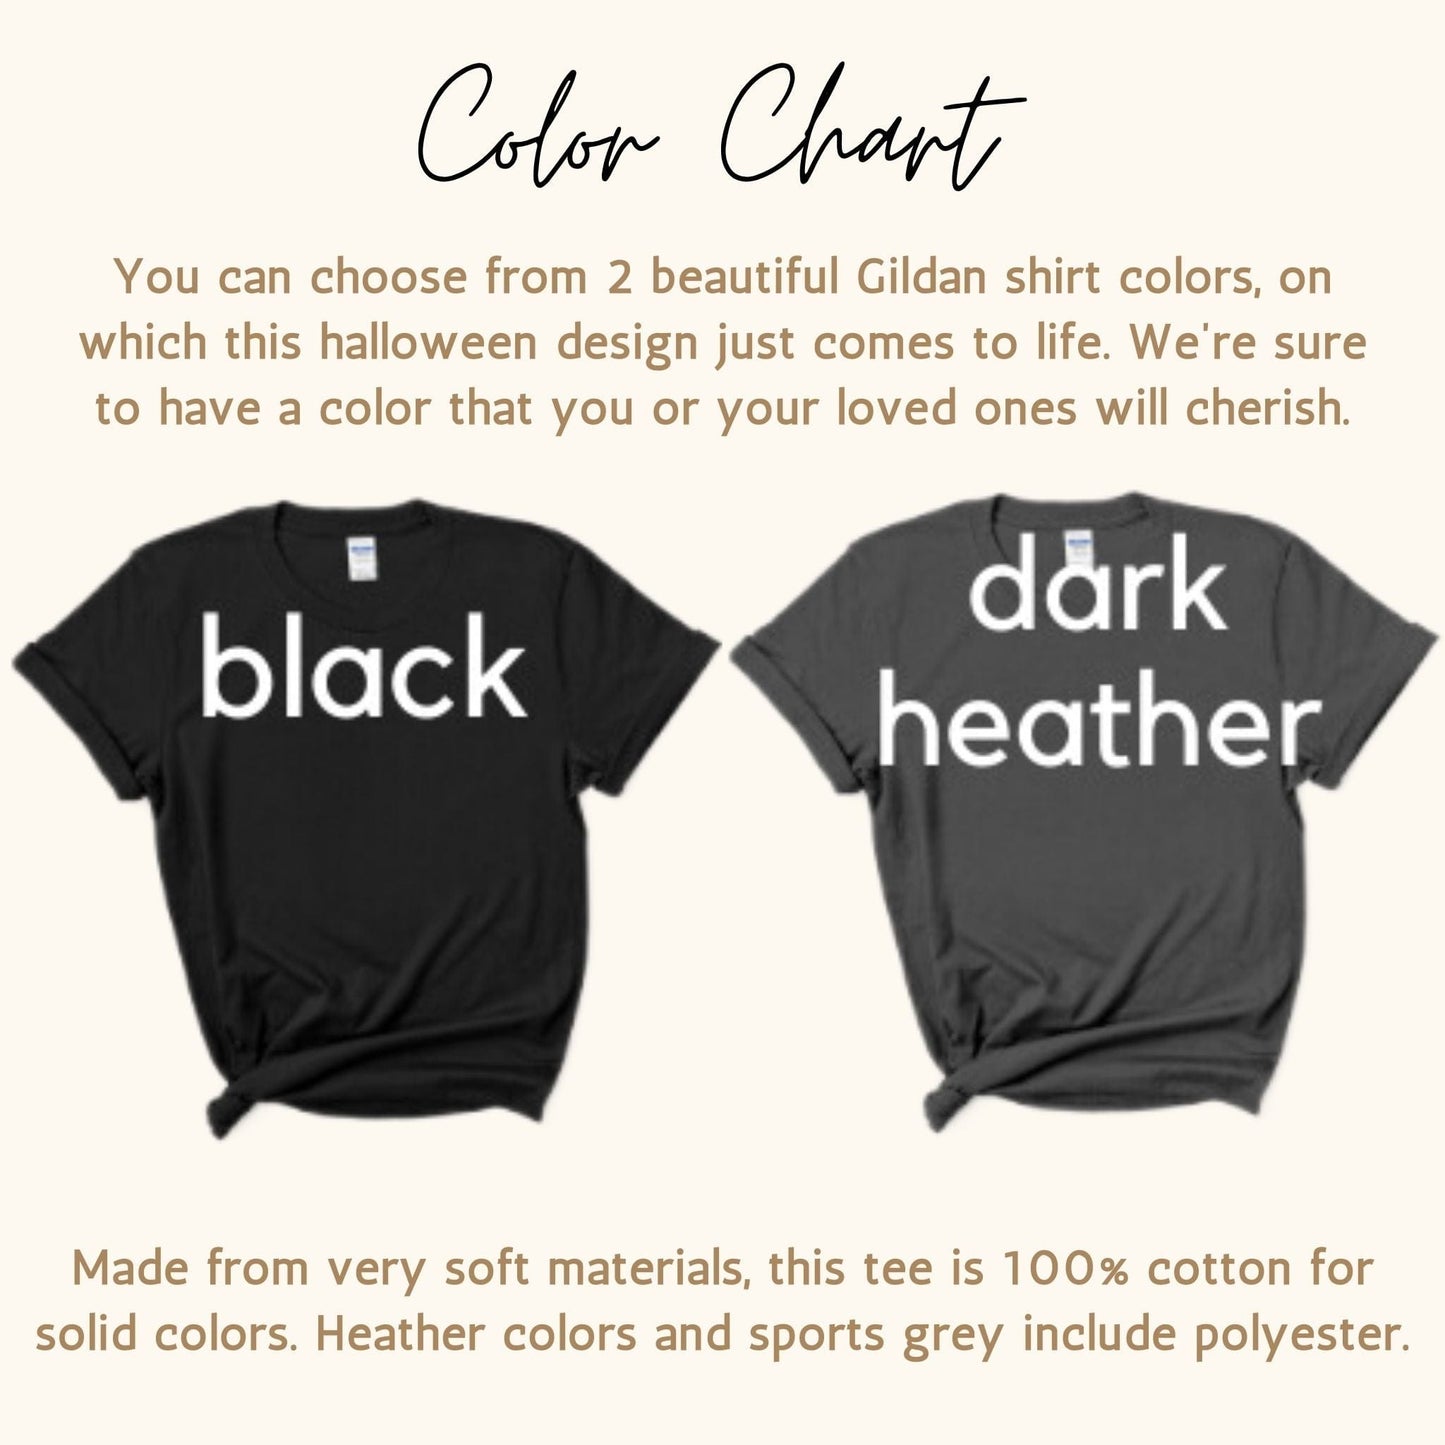 Color chart for Illinois Vintage Creepy 2023 Skeleton Printed Gildan G6400 Halloween Tee Shirts